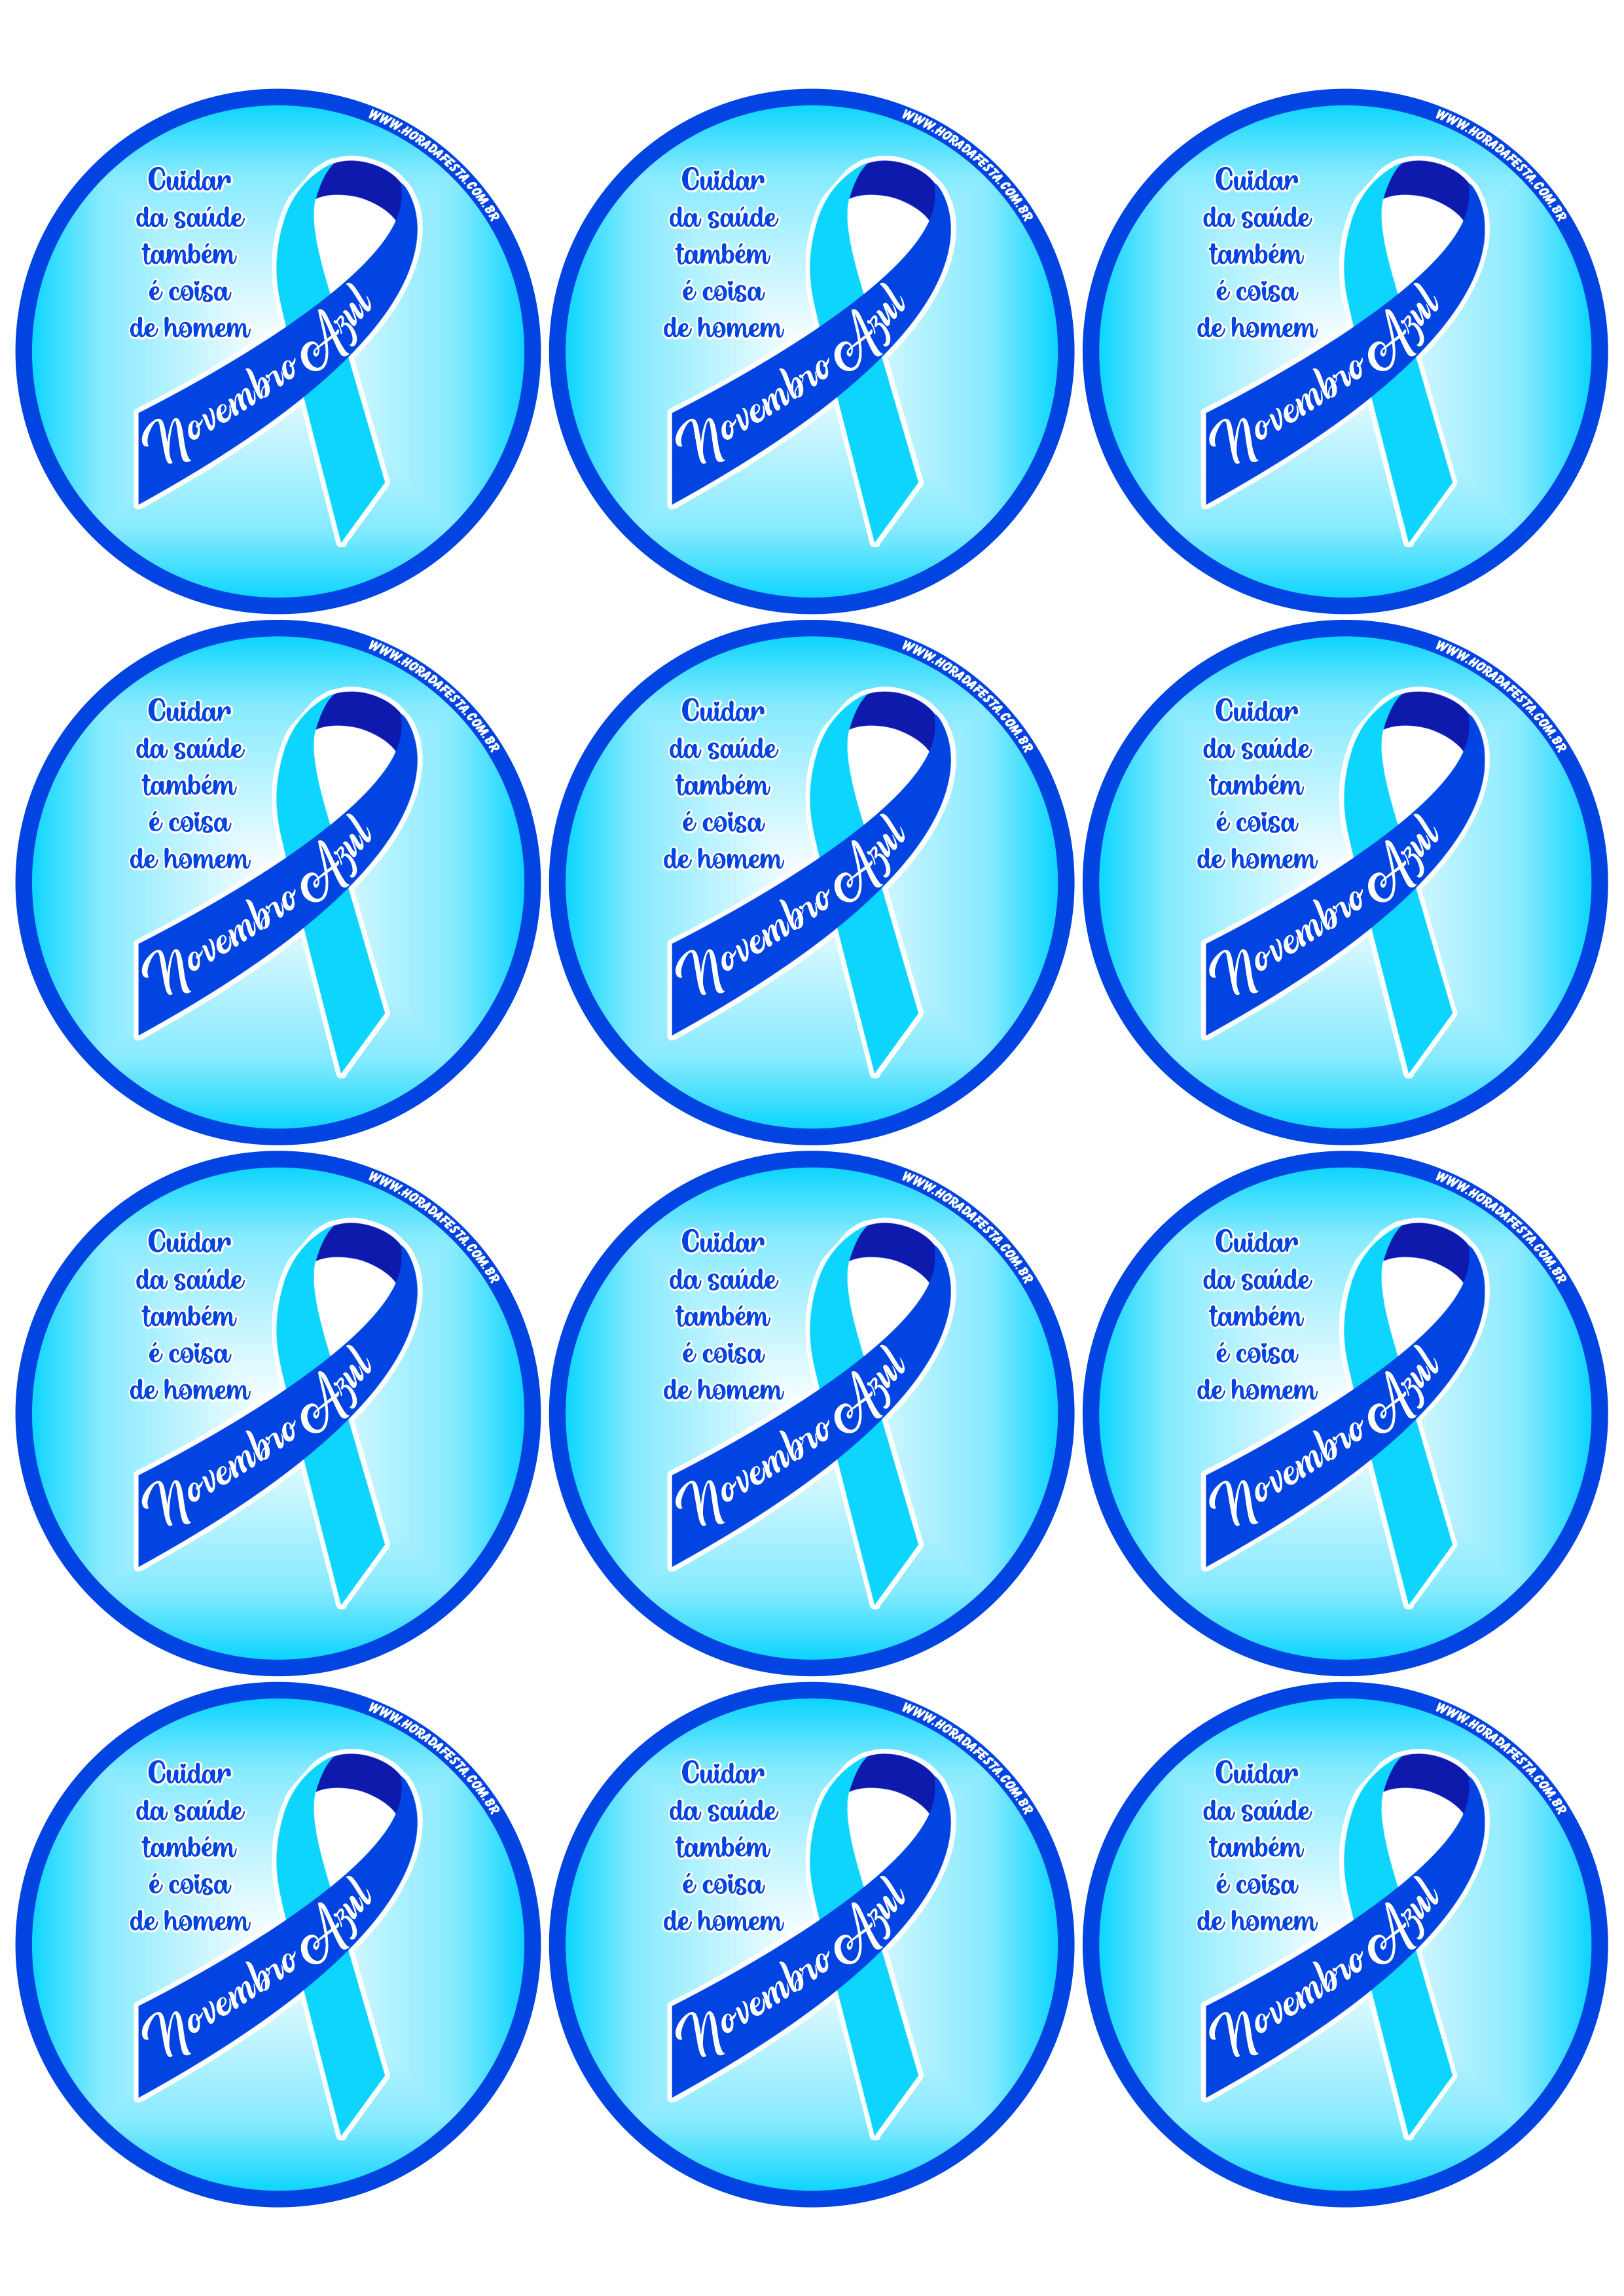 Novembro Azul mês de prevenção ao câncer de próstata cuidar da saúde também é coisa de homem adesivo tag sticker redondo 12 imagens png